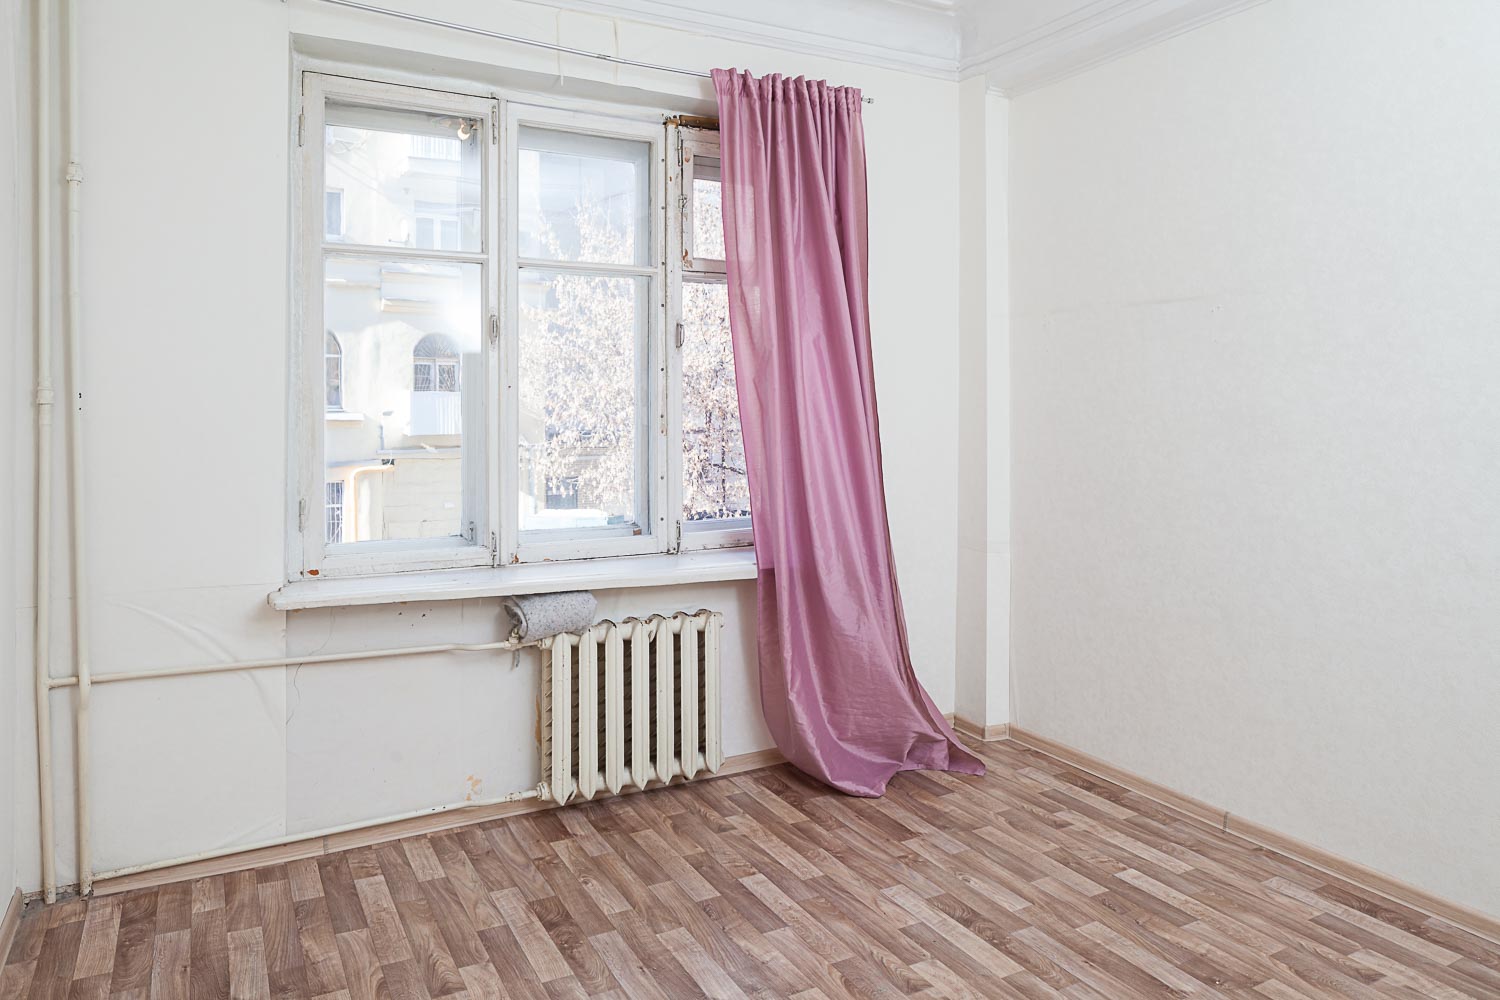 Продам квартиру в Москве по адресу Капельский переулок, 13, площадь 80 квм Недвижимость Москва (Россия)  Во дворе несколько детских площадок